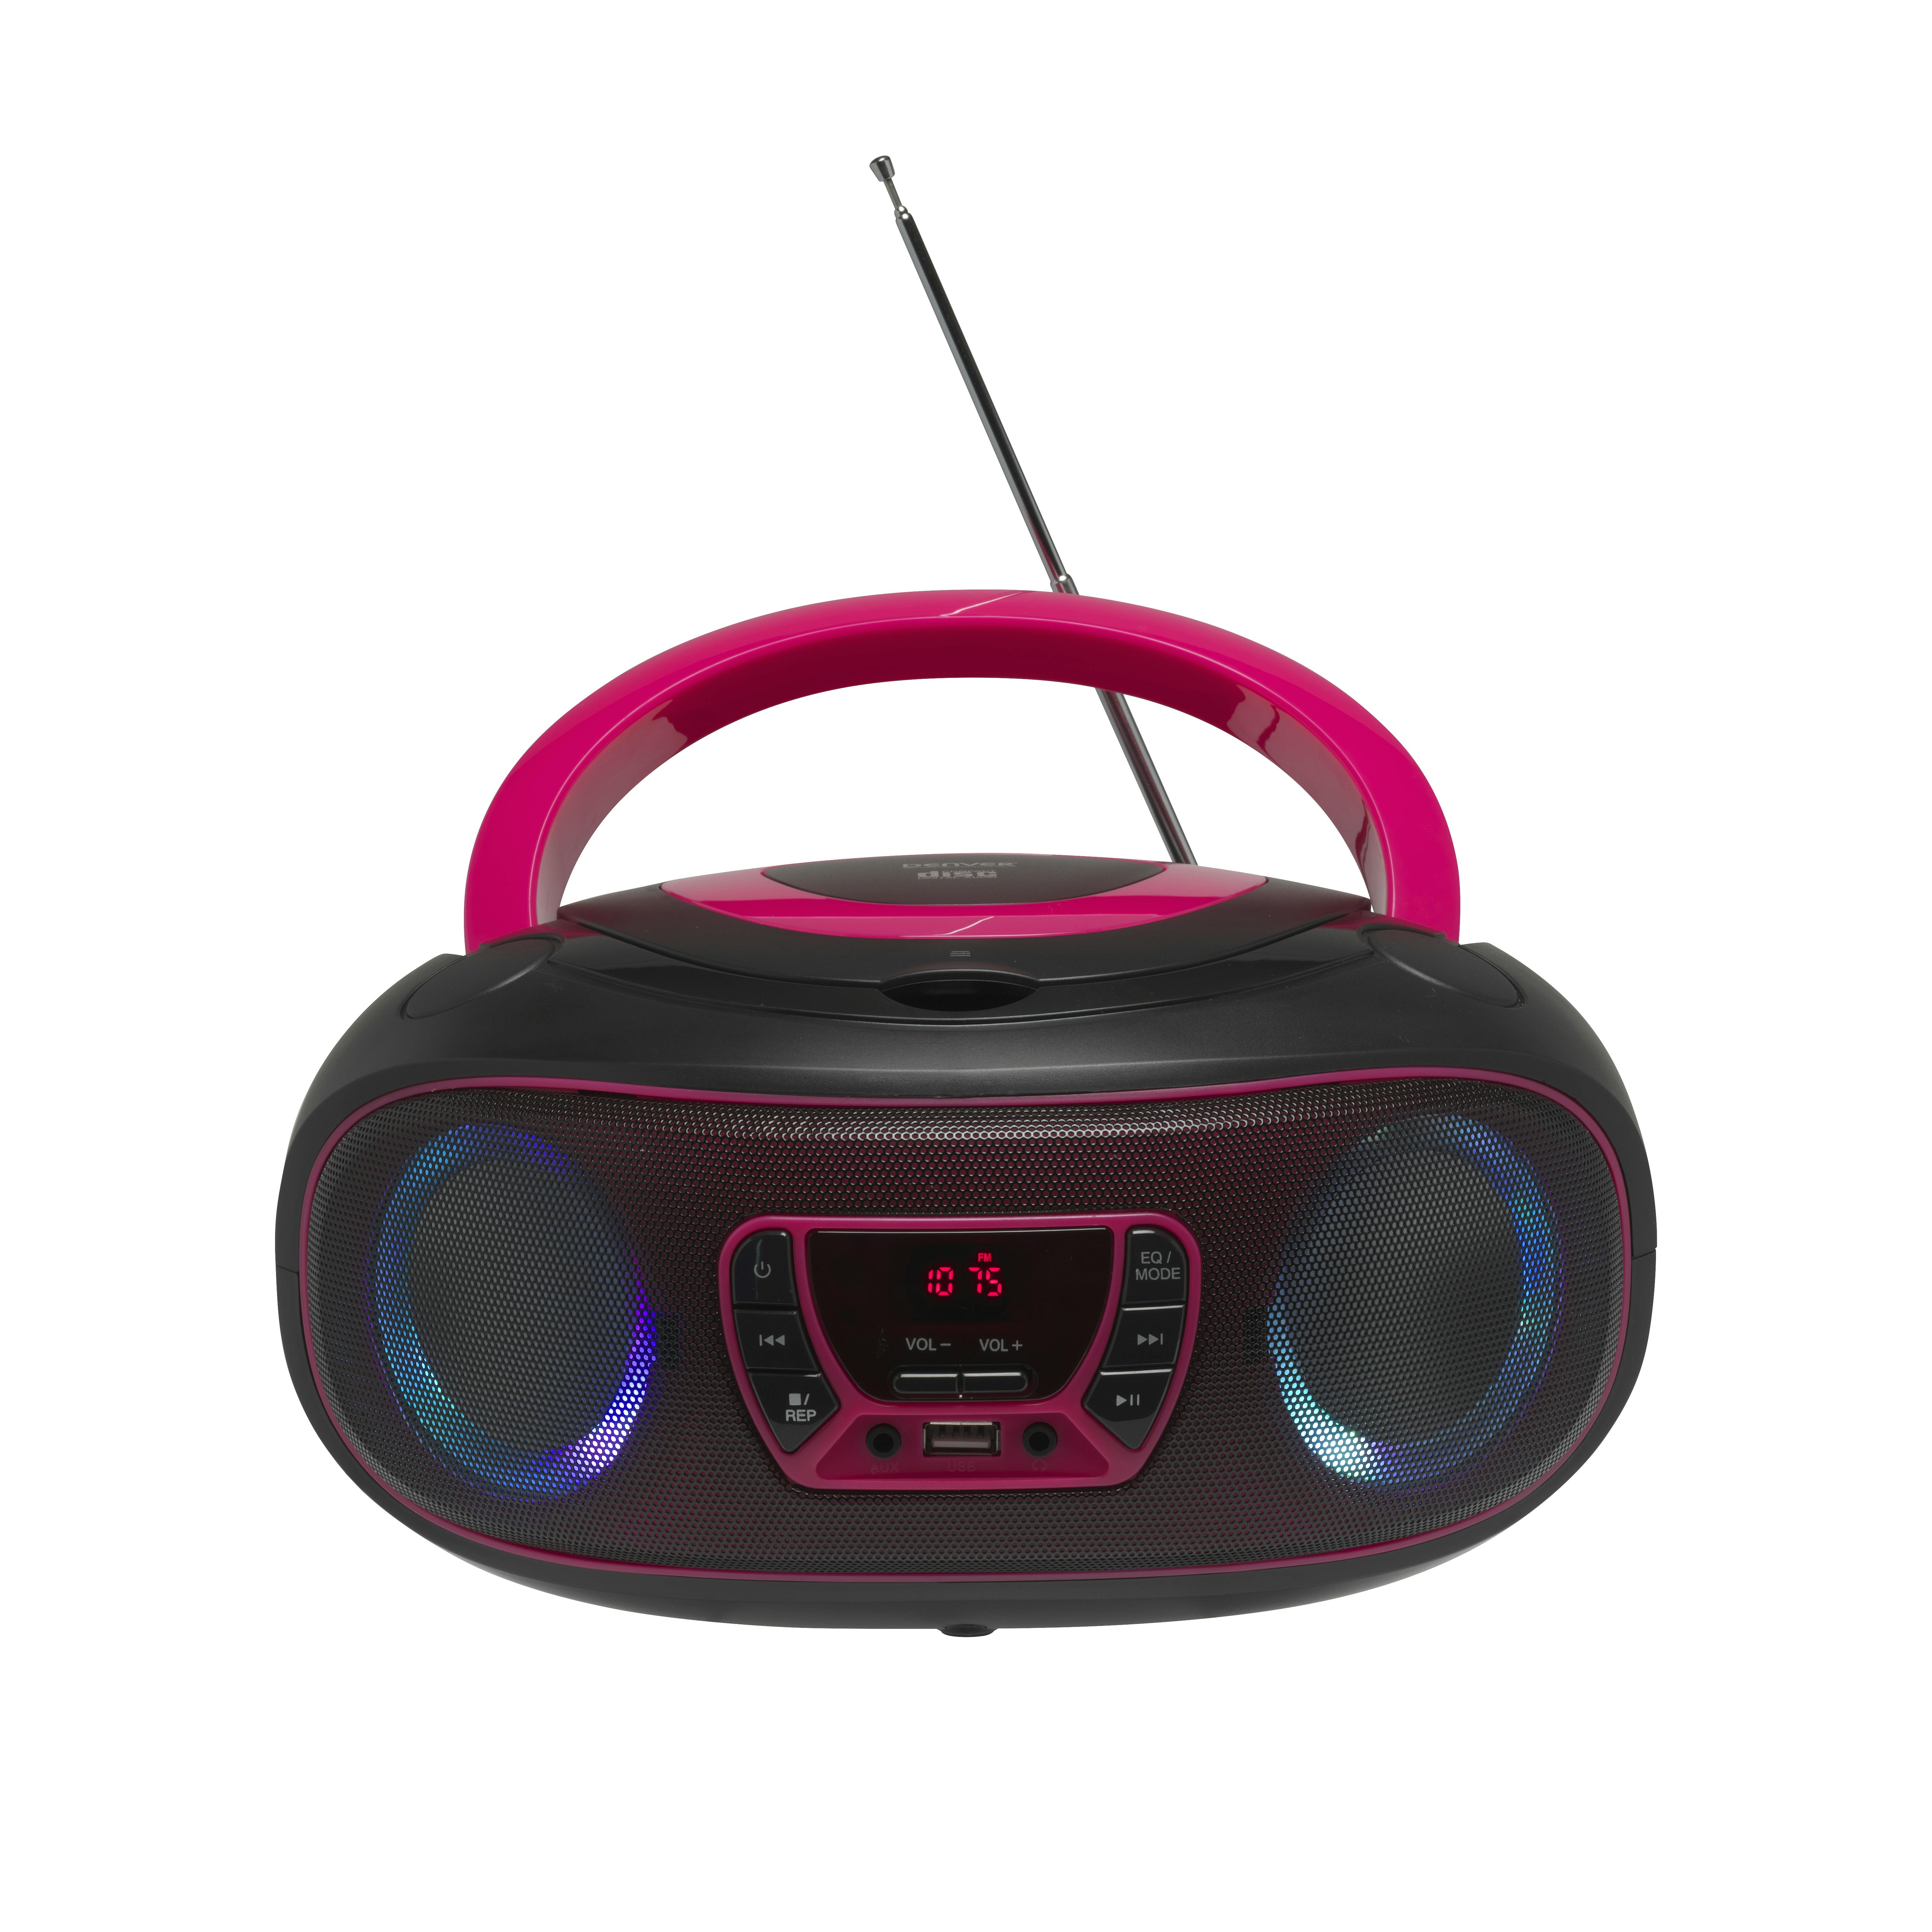 Denver Lecteur CD Portable avec Effets de Lumière - Bluetooth - Poste CD  Enfant - Boombox - Radio FM - AUX - TCL212BT - Bleu